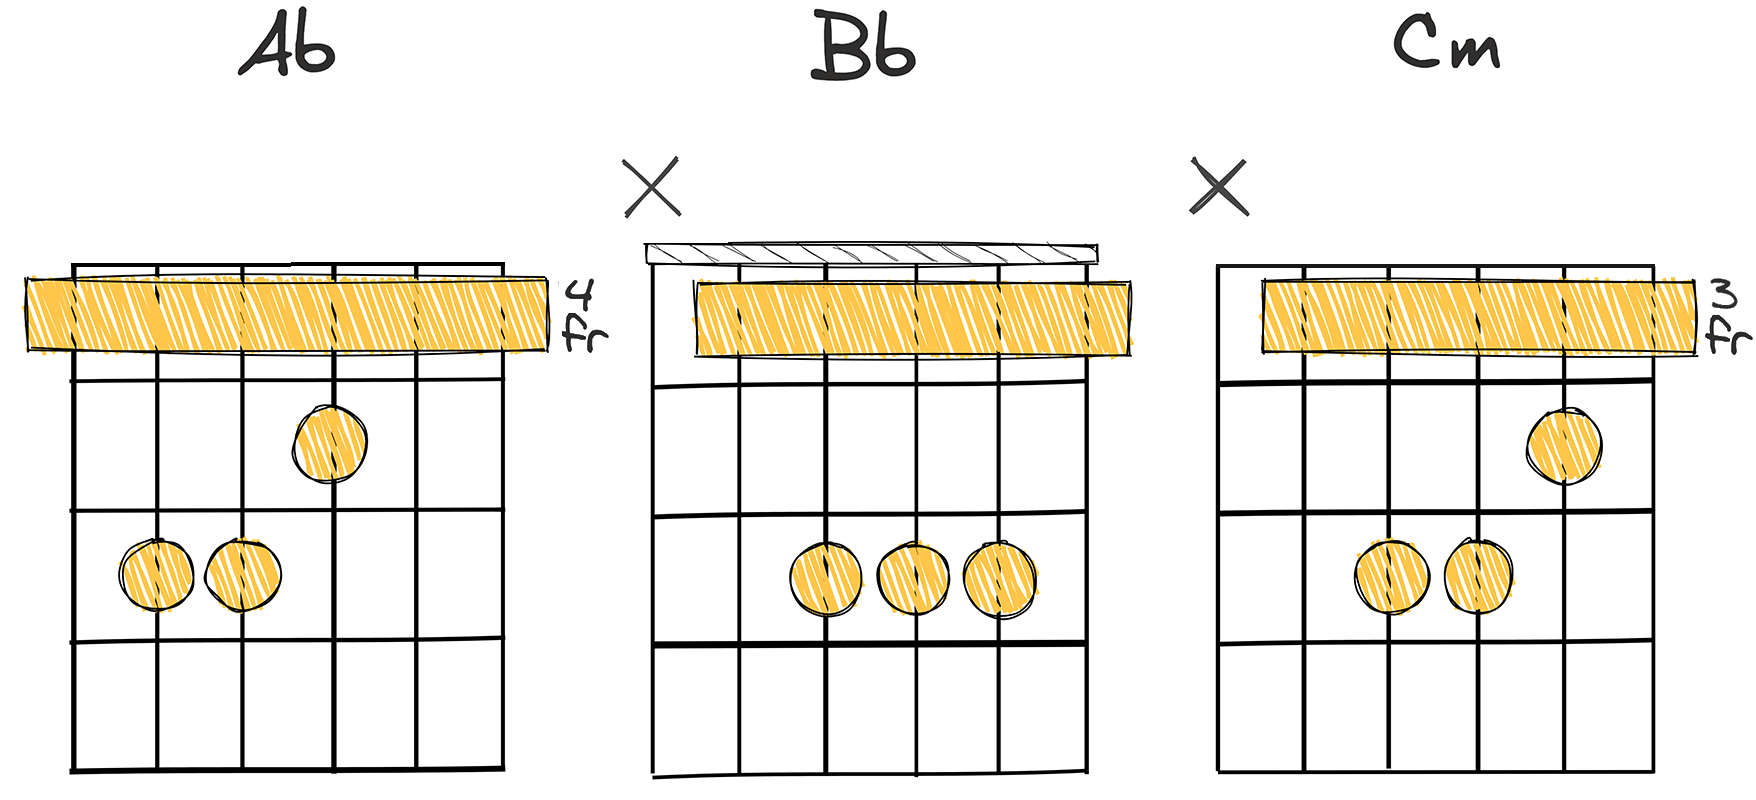 VI - VII - i (6-7-1) chords diagram